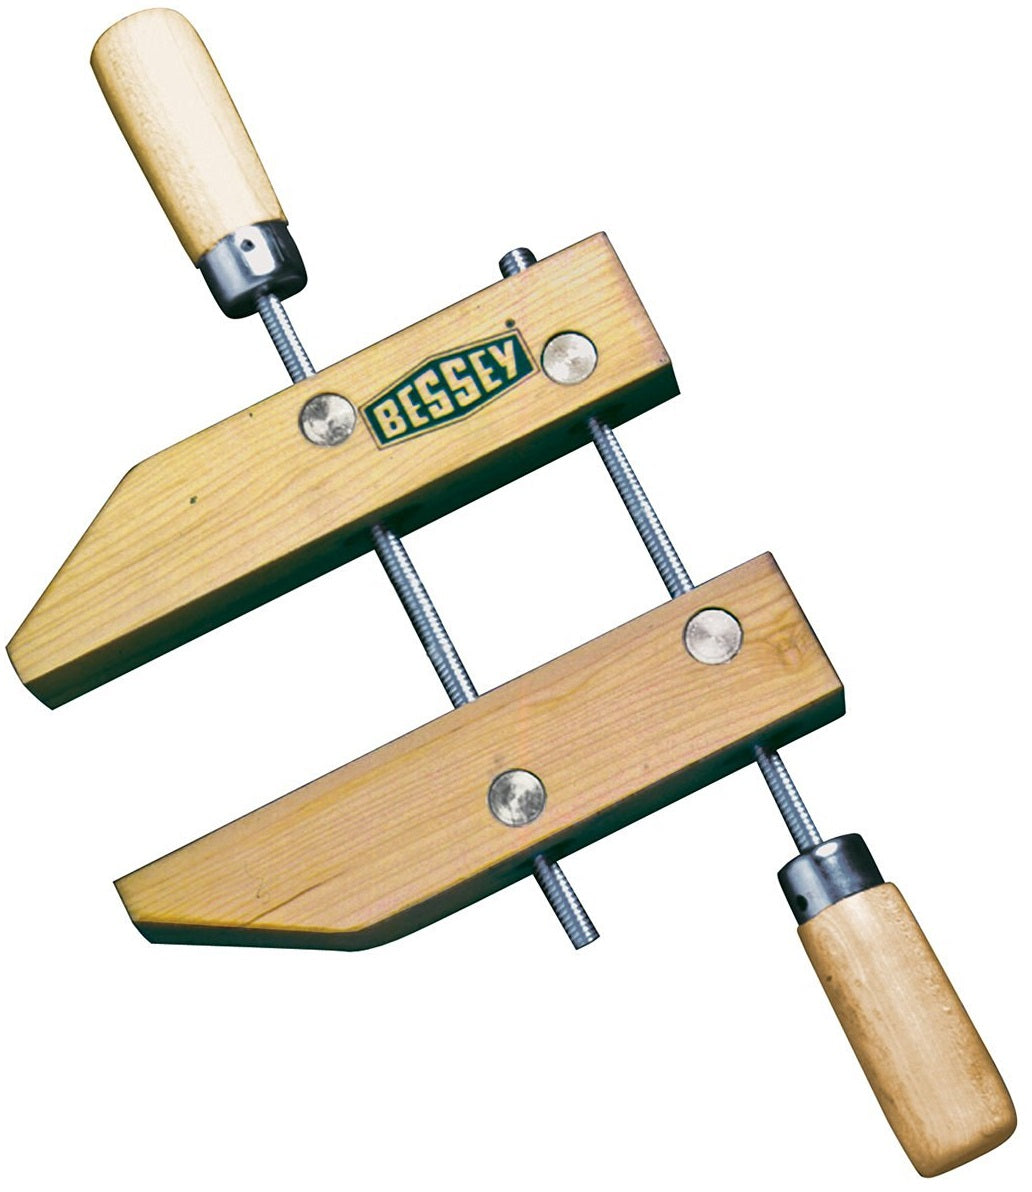 Bessey HS-6 Wood Handscrew Clamp, 6"